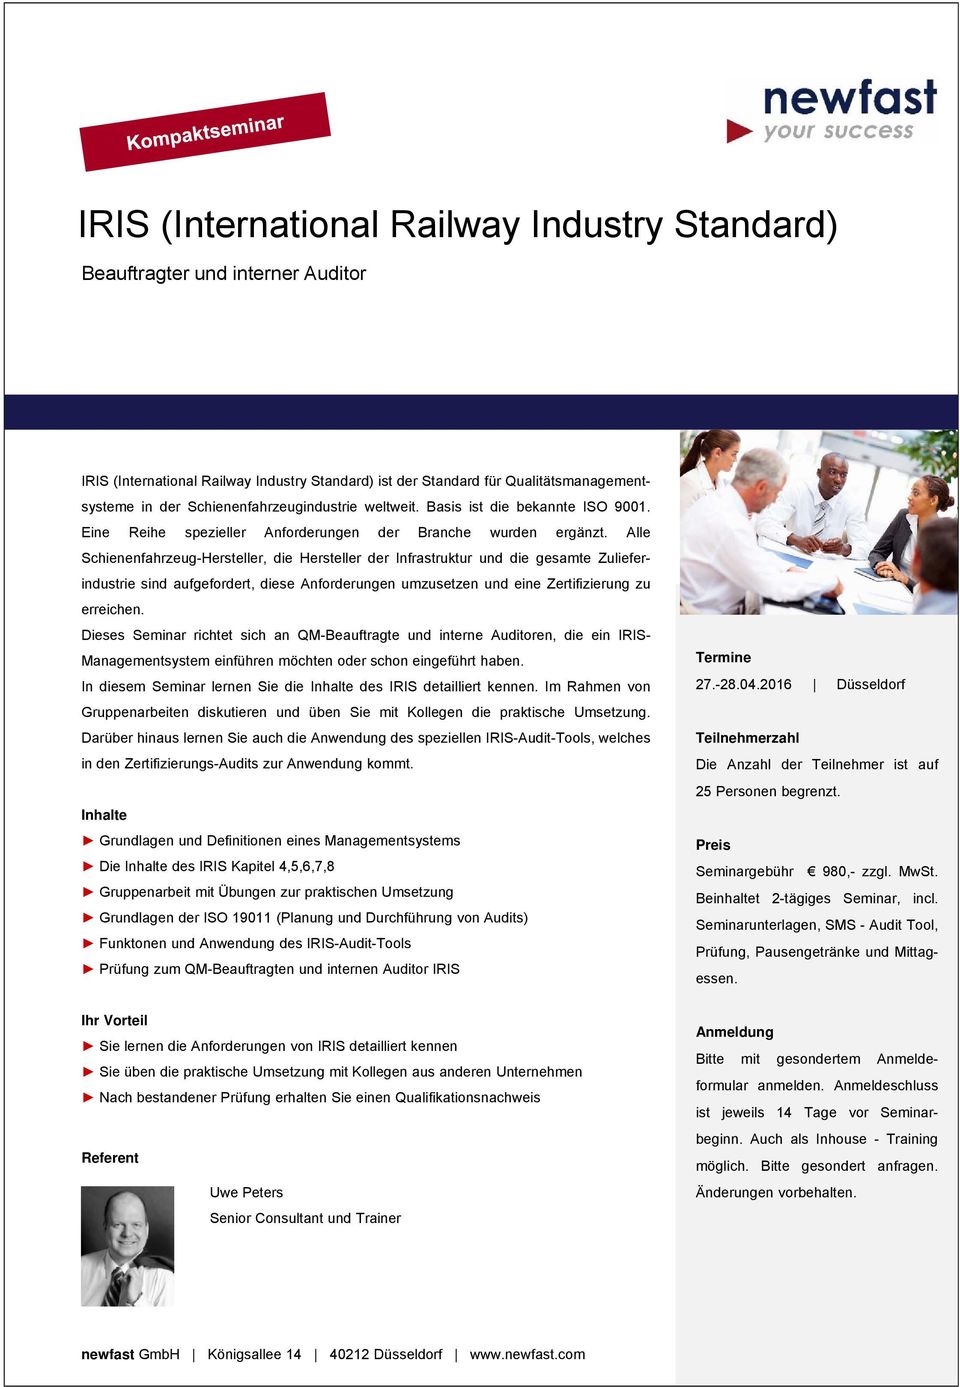 Alle Schienenfahrzeug-Hersteller, die Hersteller der Infrastruktur und die gesamte Zulieferindustrie sind aufgefordert, diese Anforderungen umzusetzen und eine Zertifizierung zu erreichen.